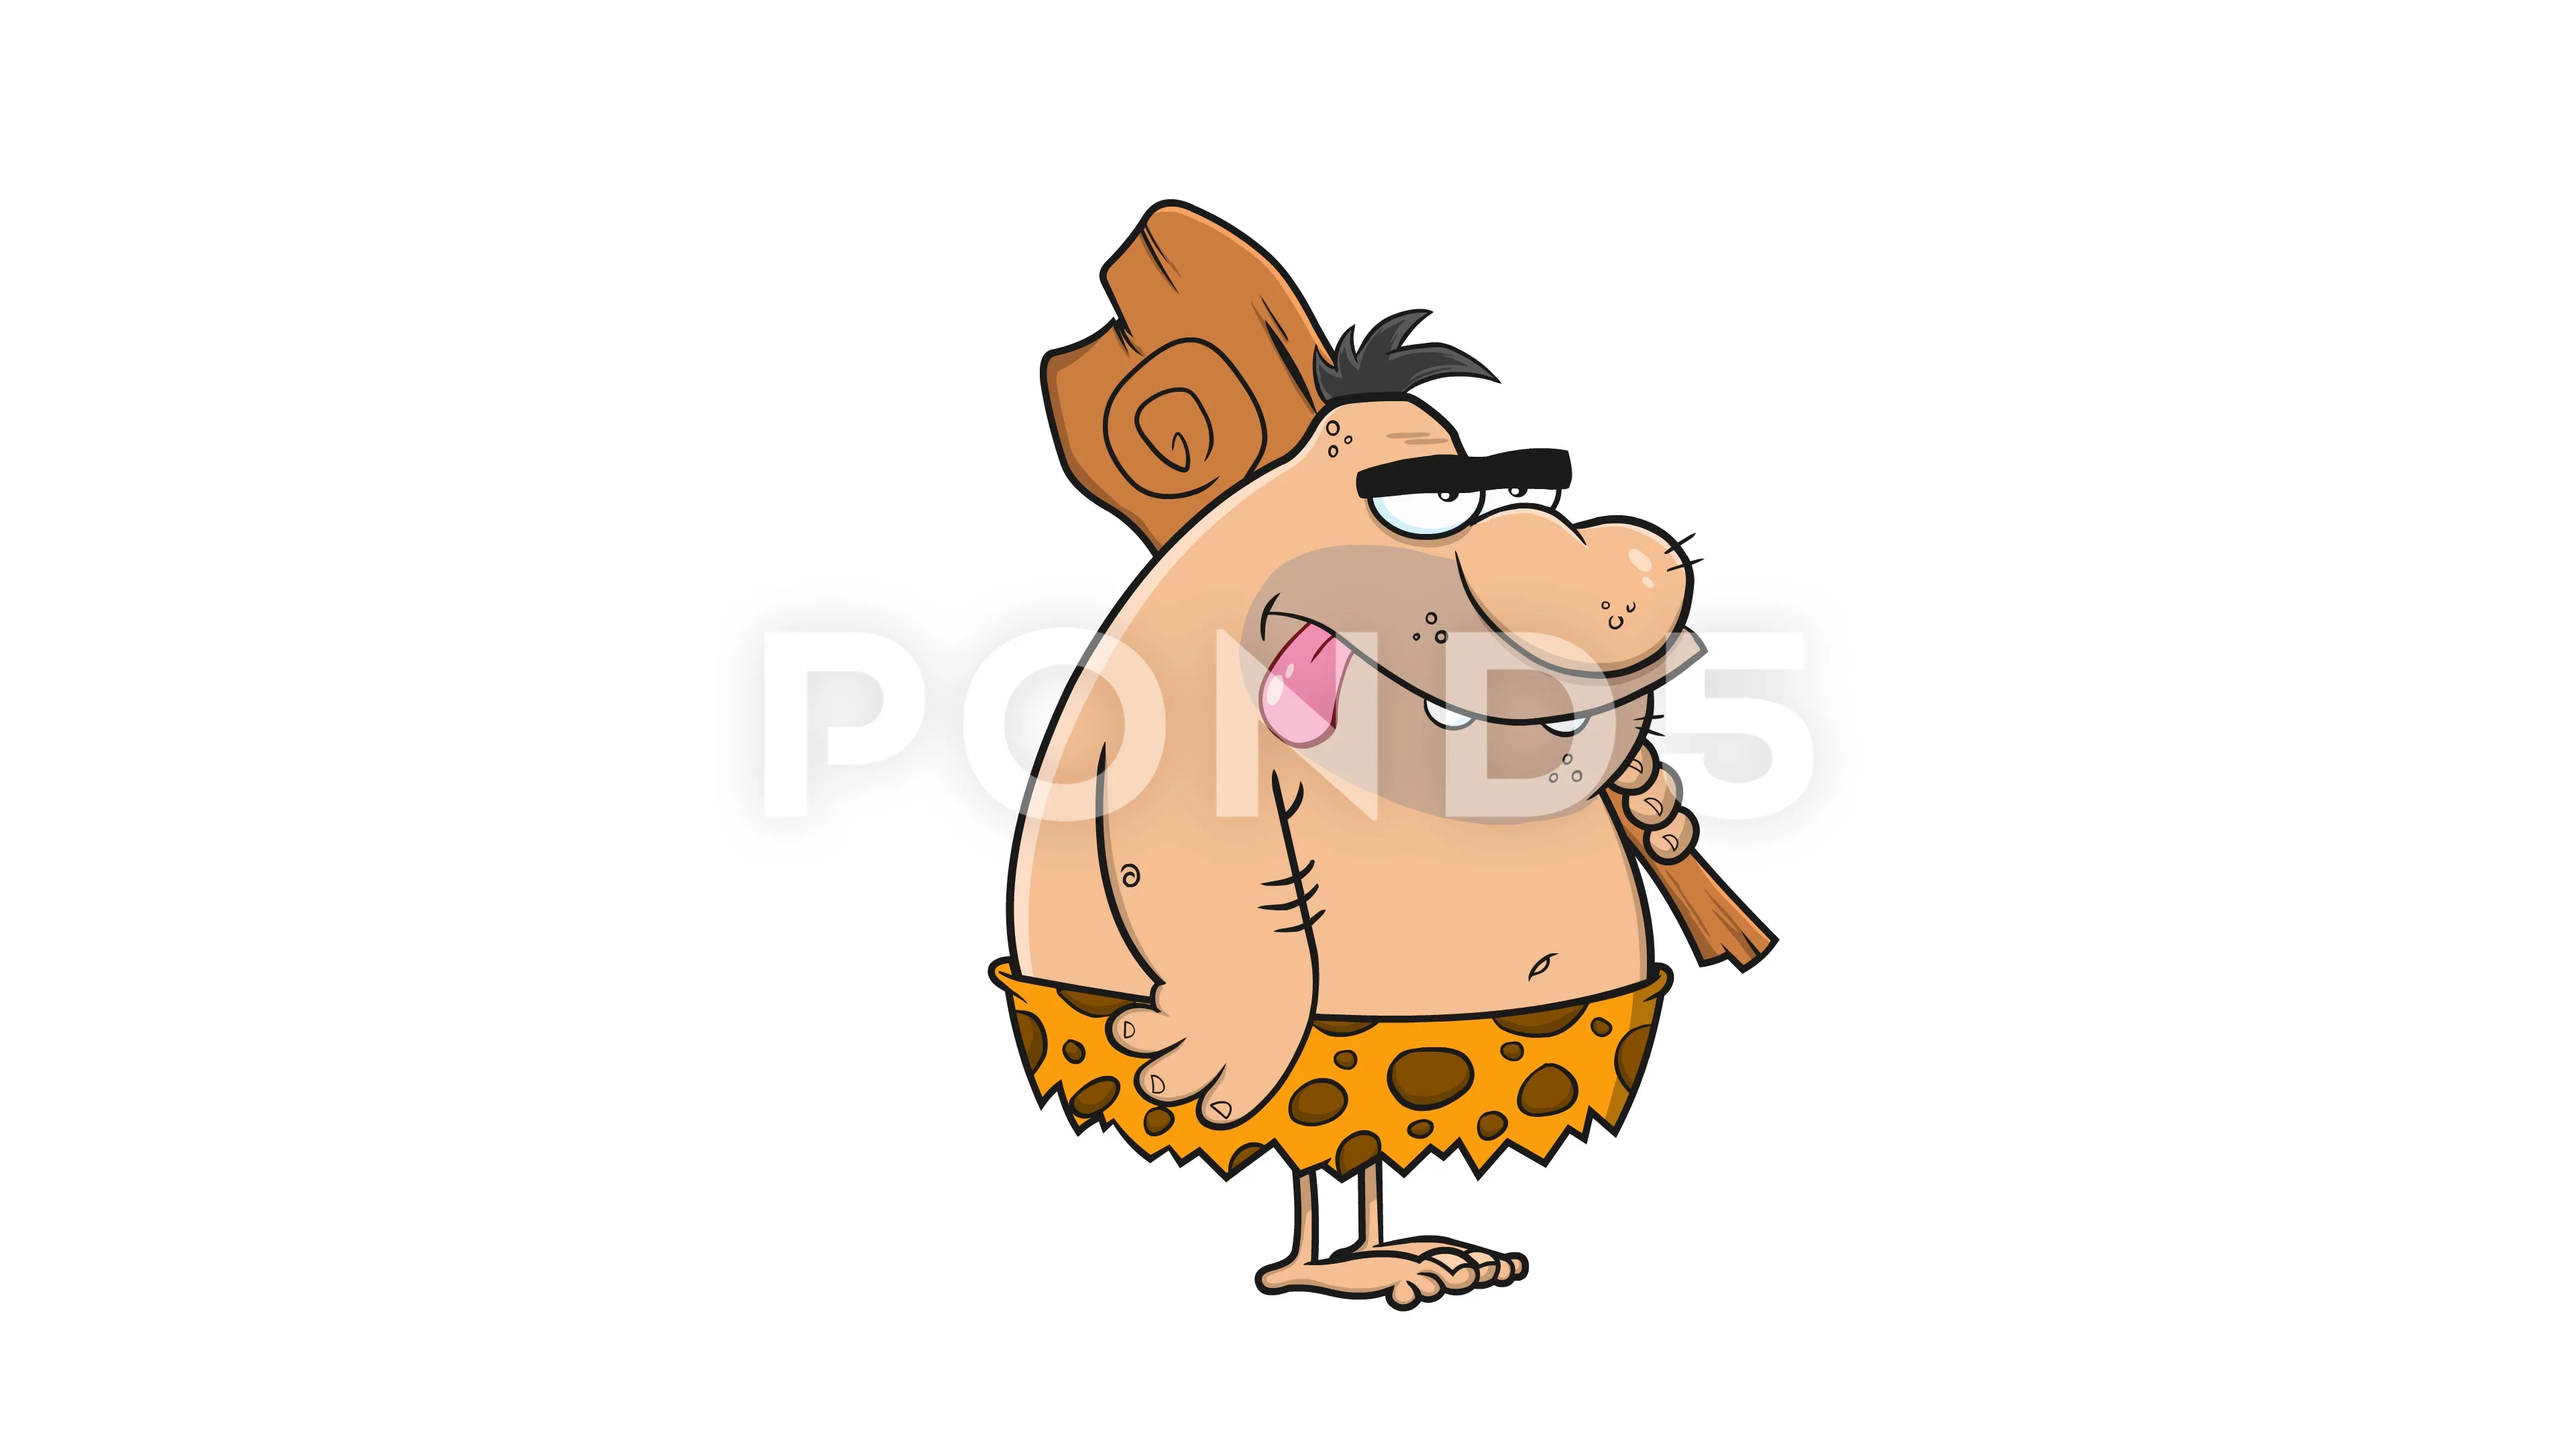 Caveman Funny Cartoon Character Club Footage 136724631 Prevstill 